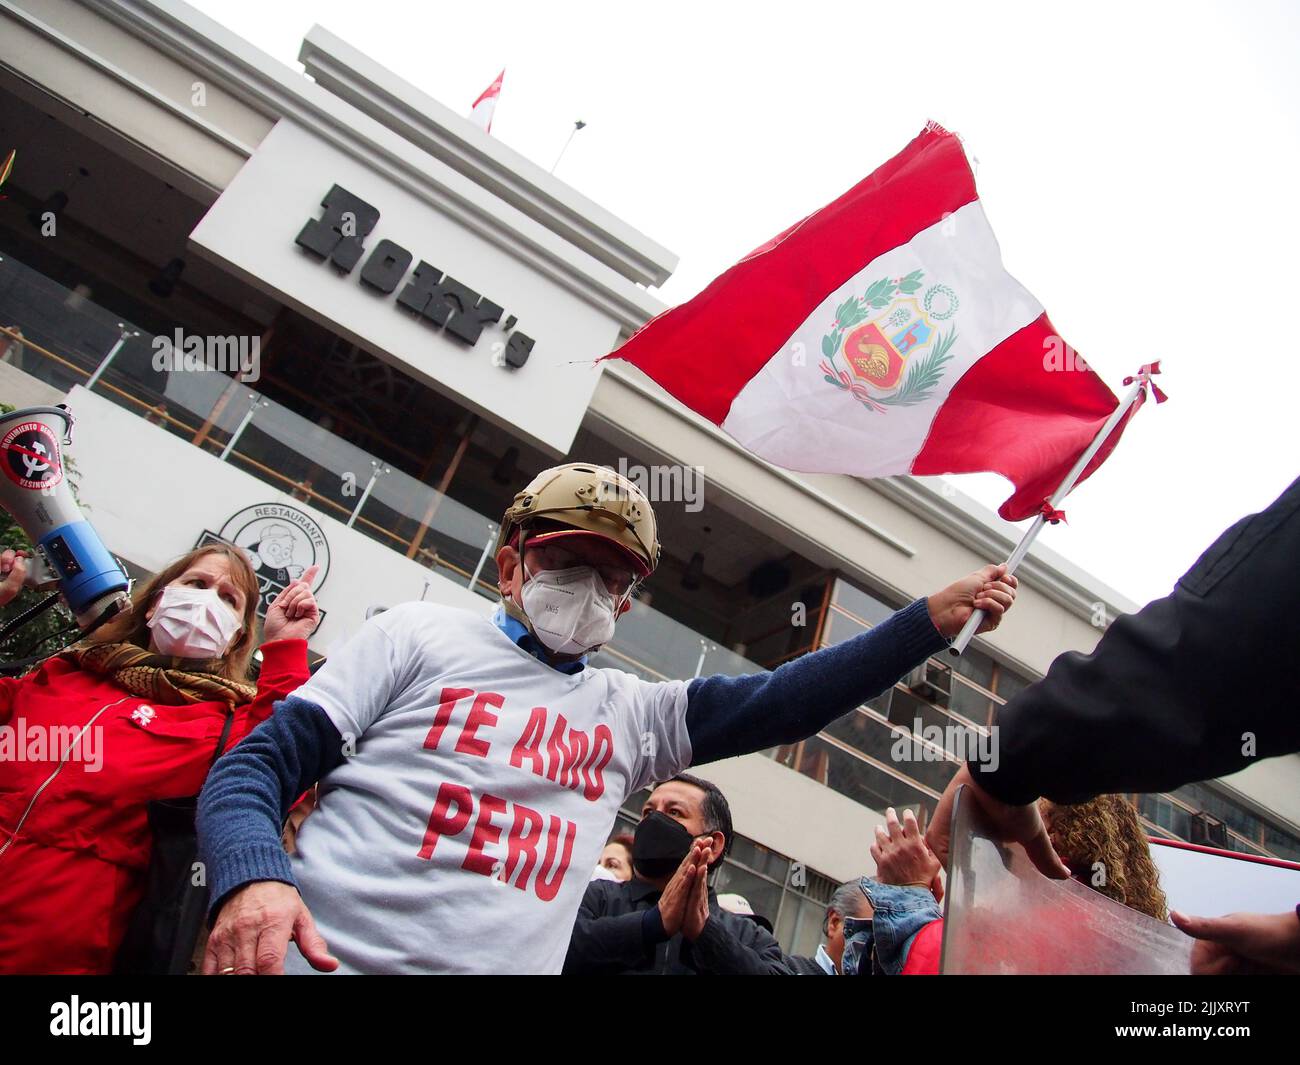 'Te quiero Perú' se puede leer en la camiseta de un manifestante mientras ondea una bandera cuando en el día de la independencia de Perú, cientos de personas se reúnen en las calles para protestar contra el presidente Pedro Castillo, acusado de varios actos de corrupción después del primer año de su gobierno. Foto de stock